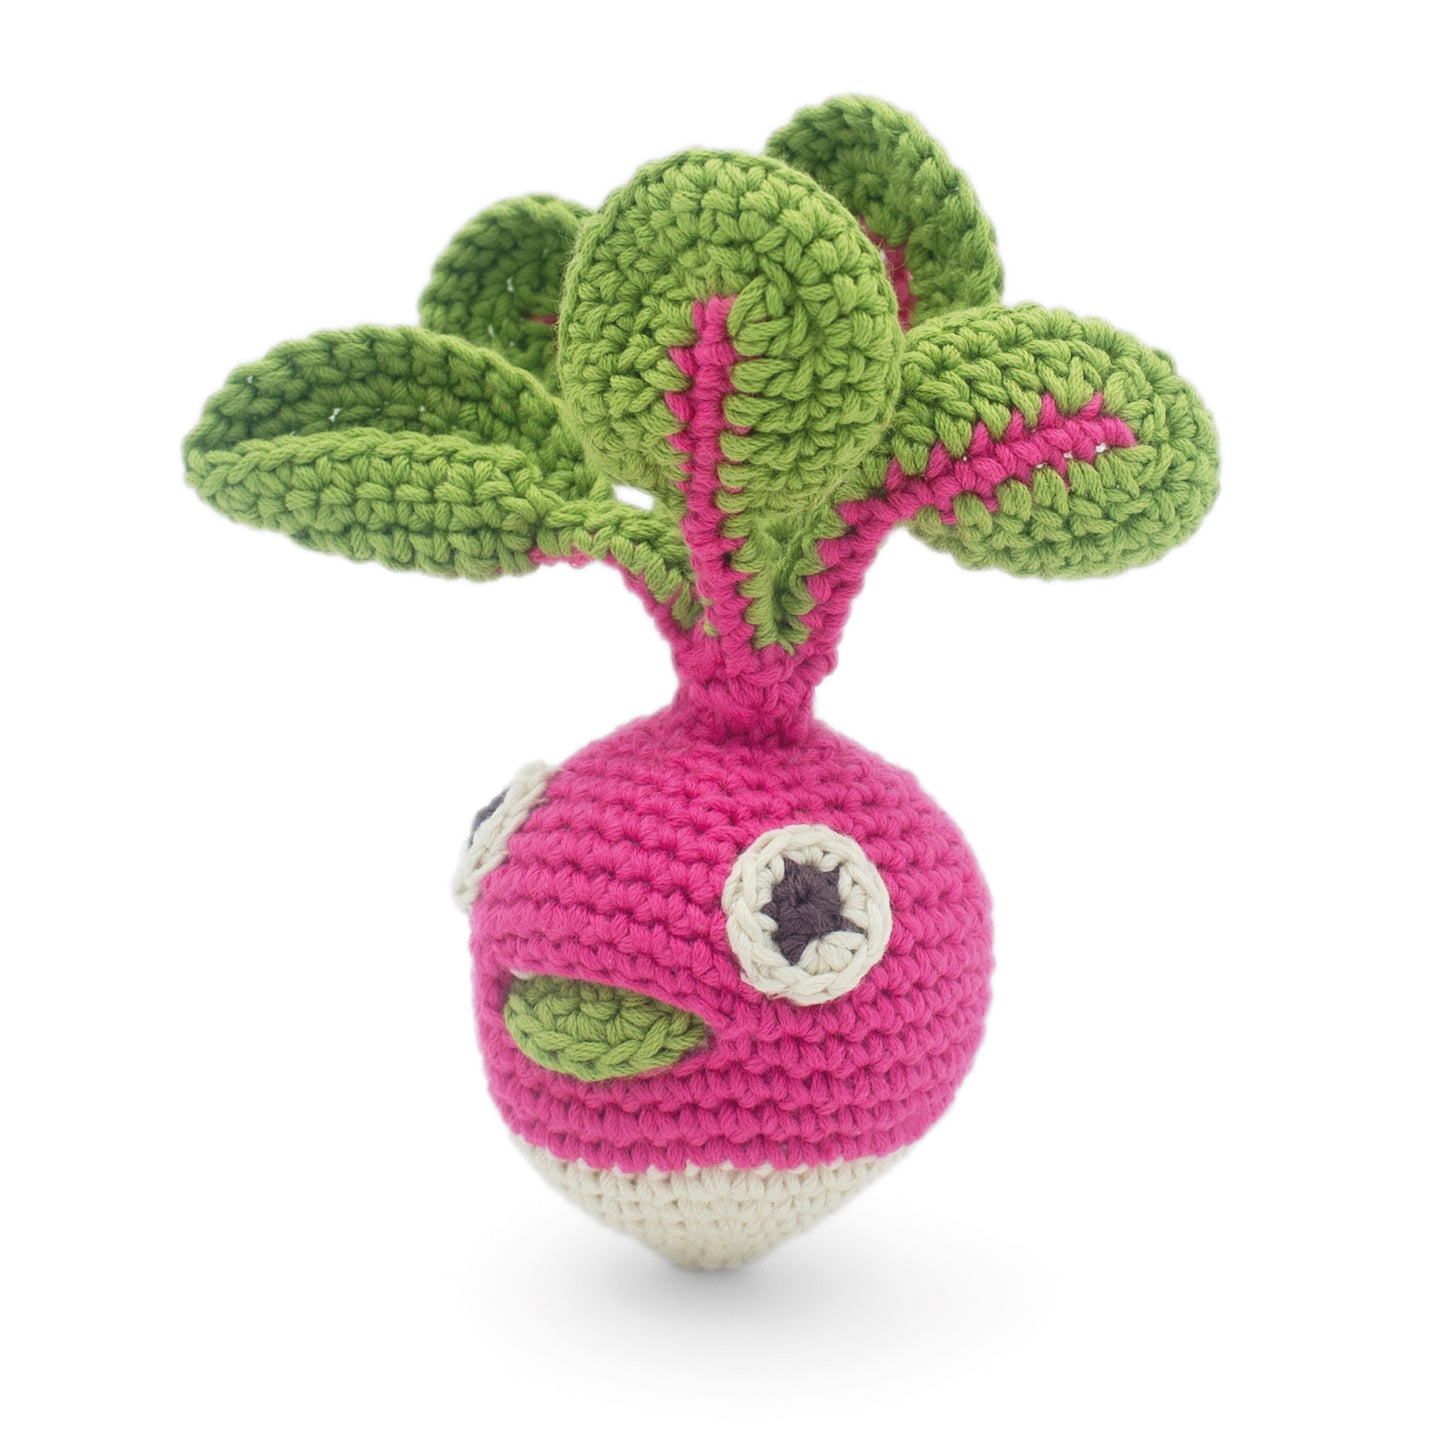 Hochet Radis pour bébé en crochet en coton bio fait main avec petit grelot. Hauteur 10 cm, couleurs rose et blanc